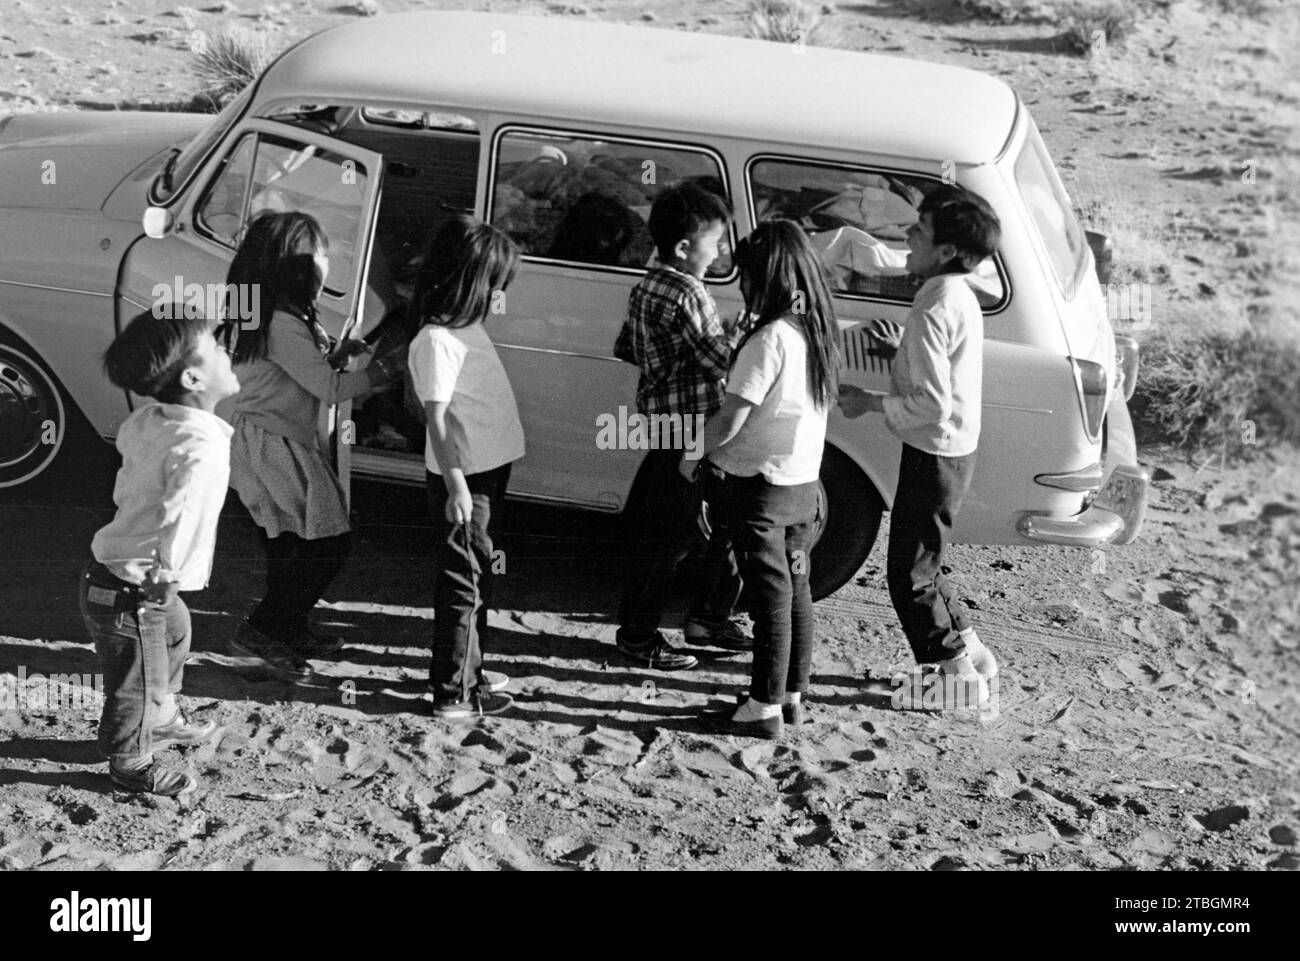 Navajokinder begutachten einen VW 1500 Variant im Monument Valley, Utah 1968. Navajo Children untersuchen einen VW 1500 Variant im Monument Valley, Utah 1968. Stockfoto